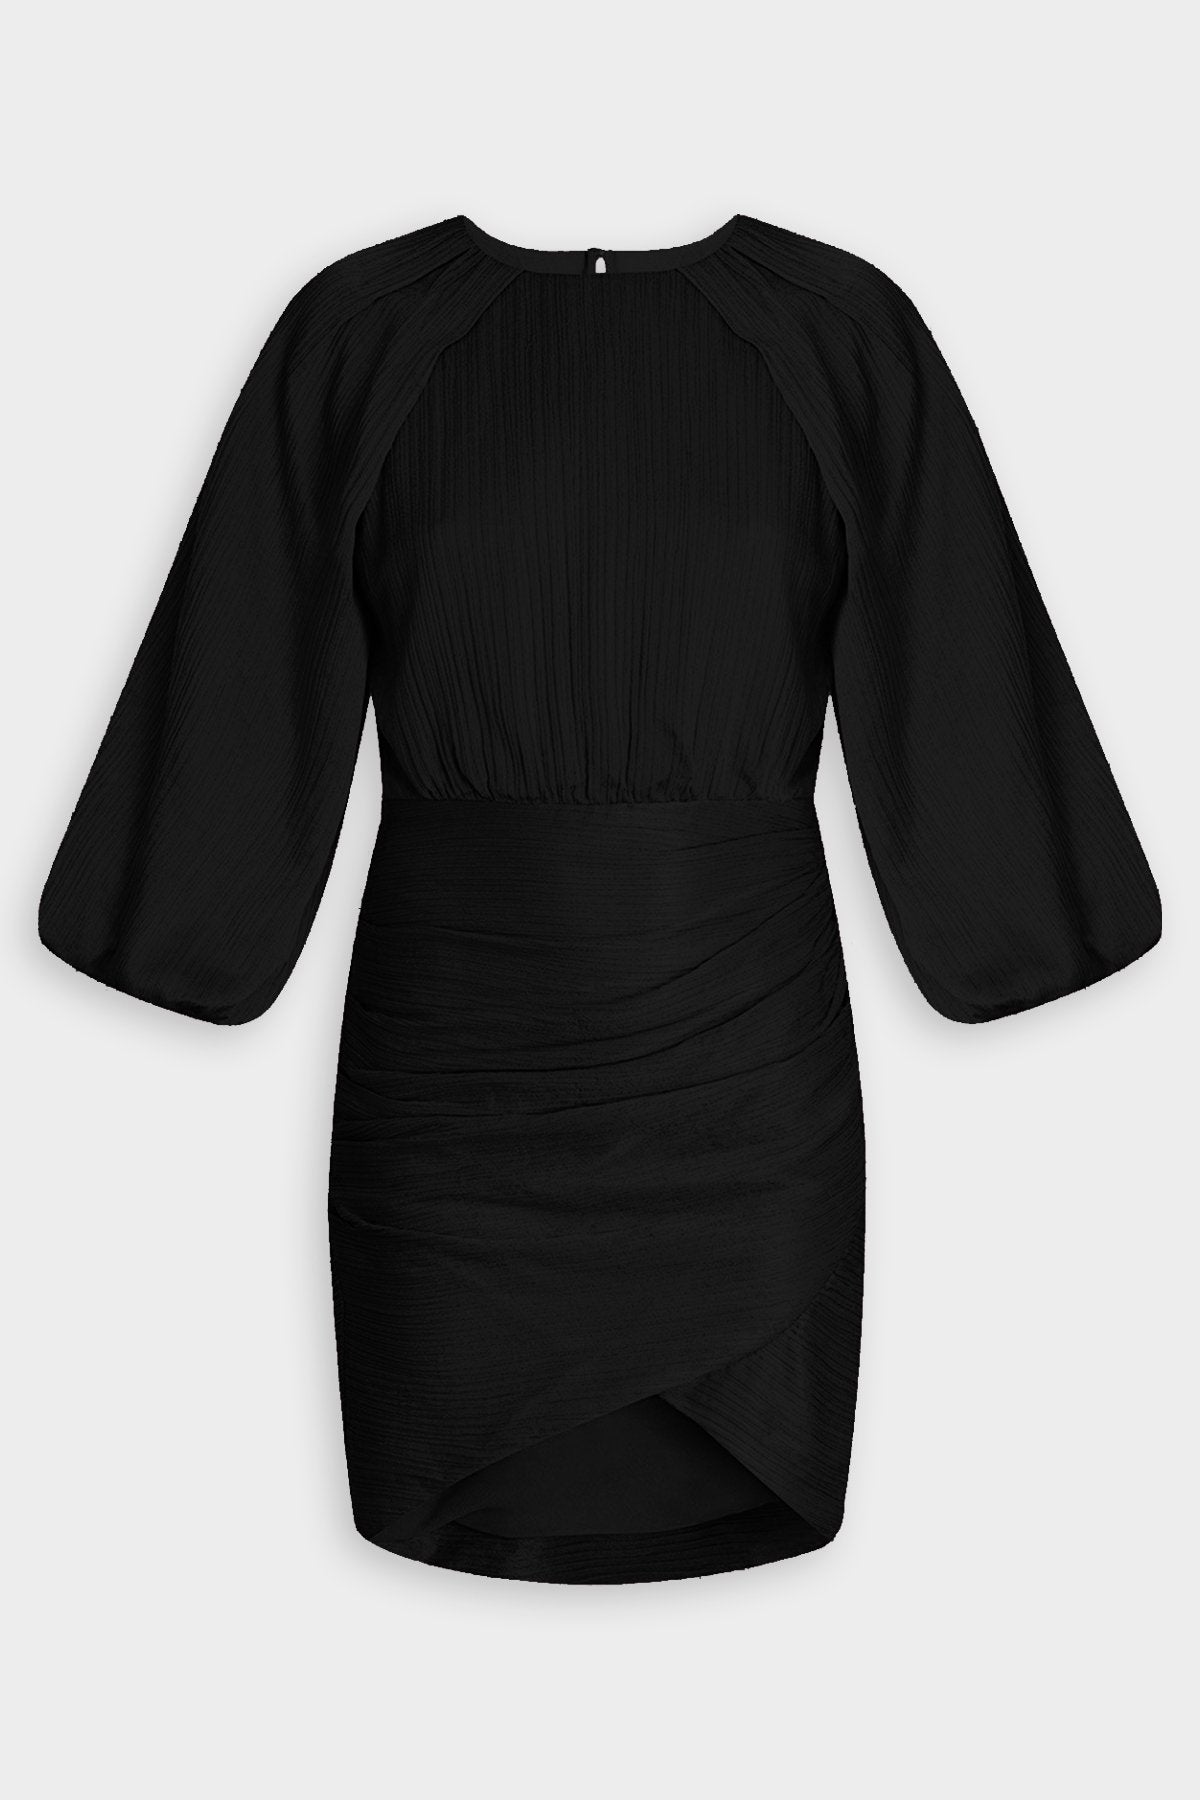 Gracelynn Dress in Black - shop-olivia.com